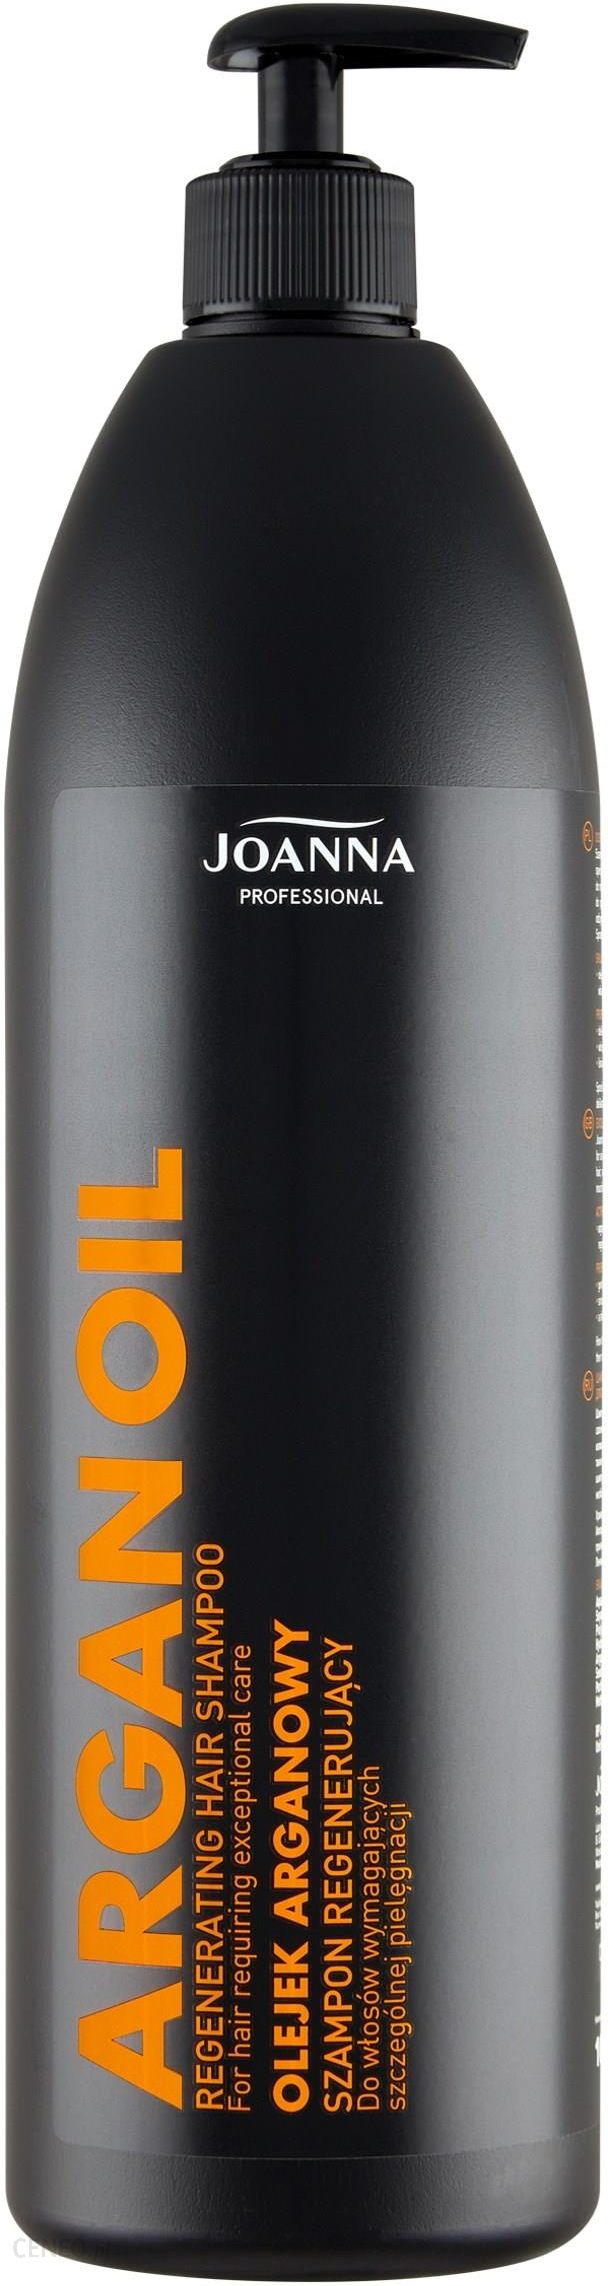 joanna szampon z olejkiem arganowym opinie